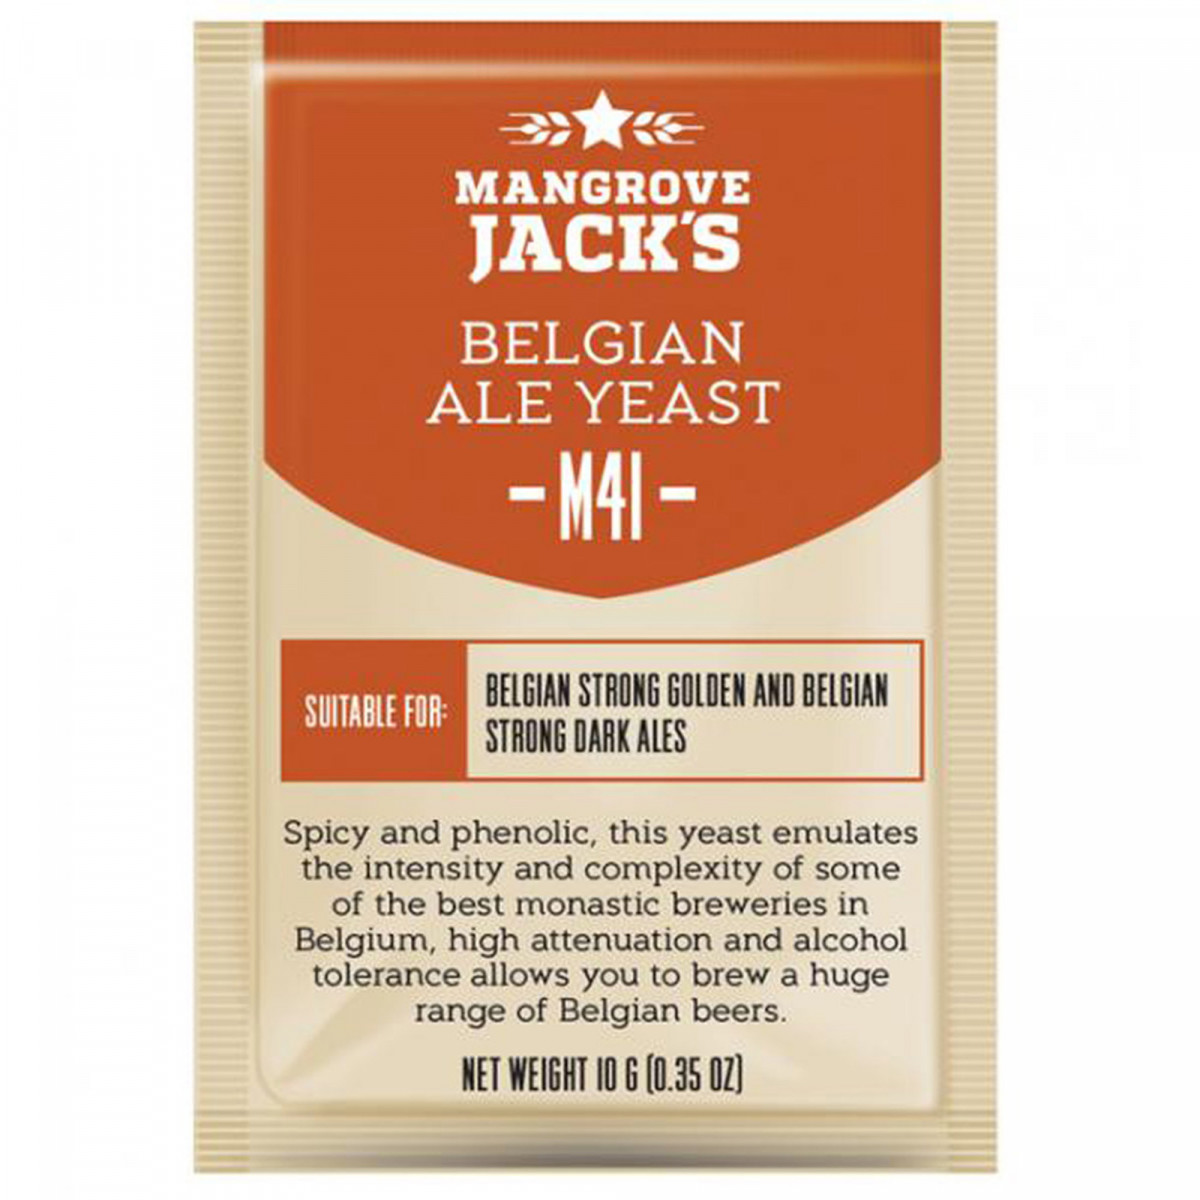 Dried brewing yeast Belgian Ale M41 - 10 g - Mangrove Jack's Craft Series